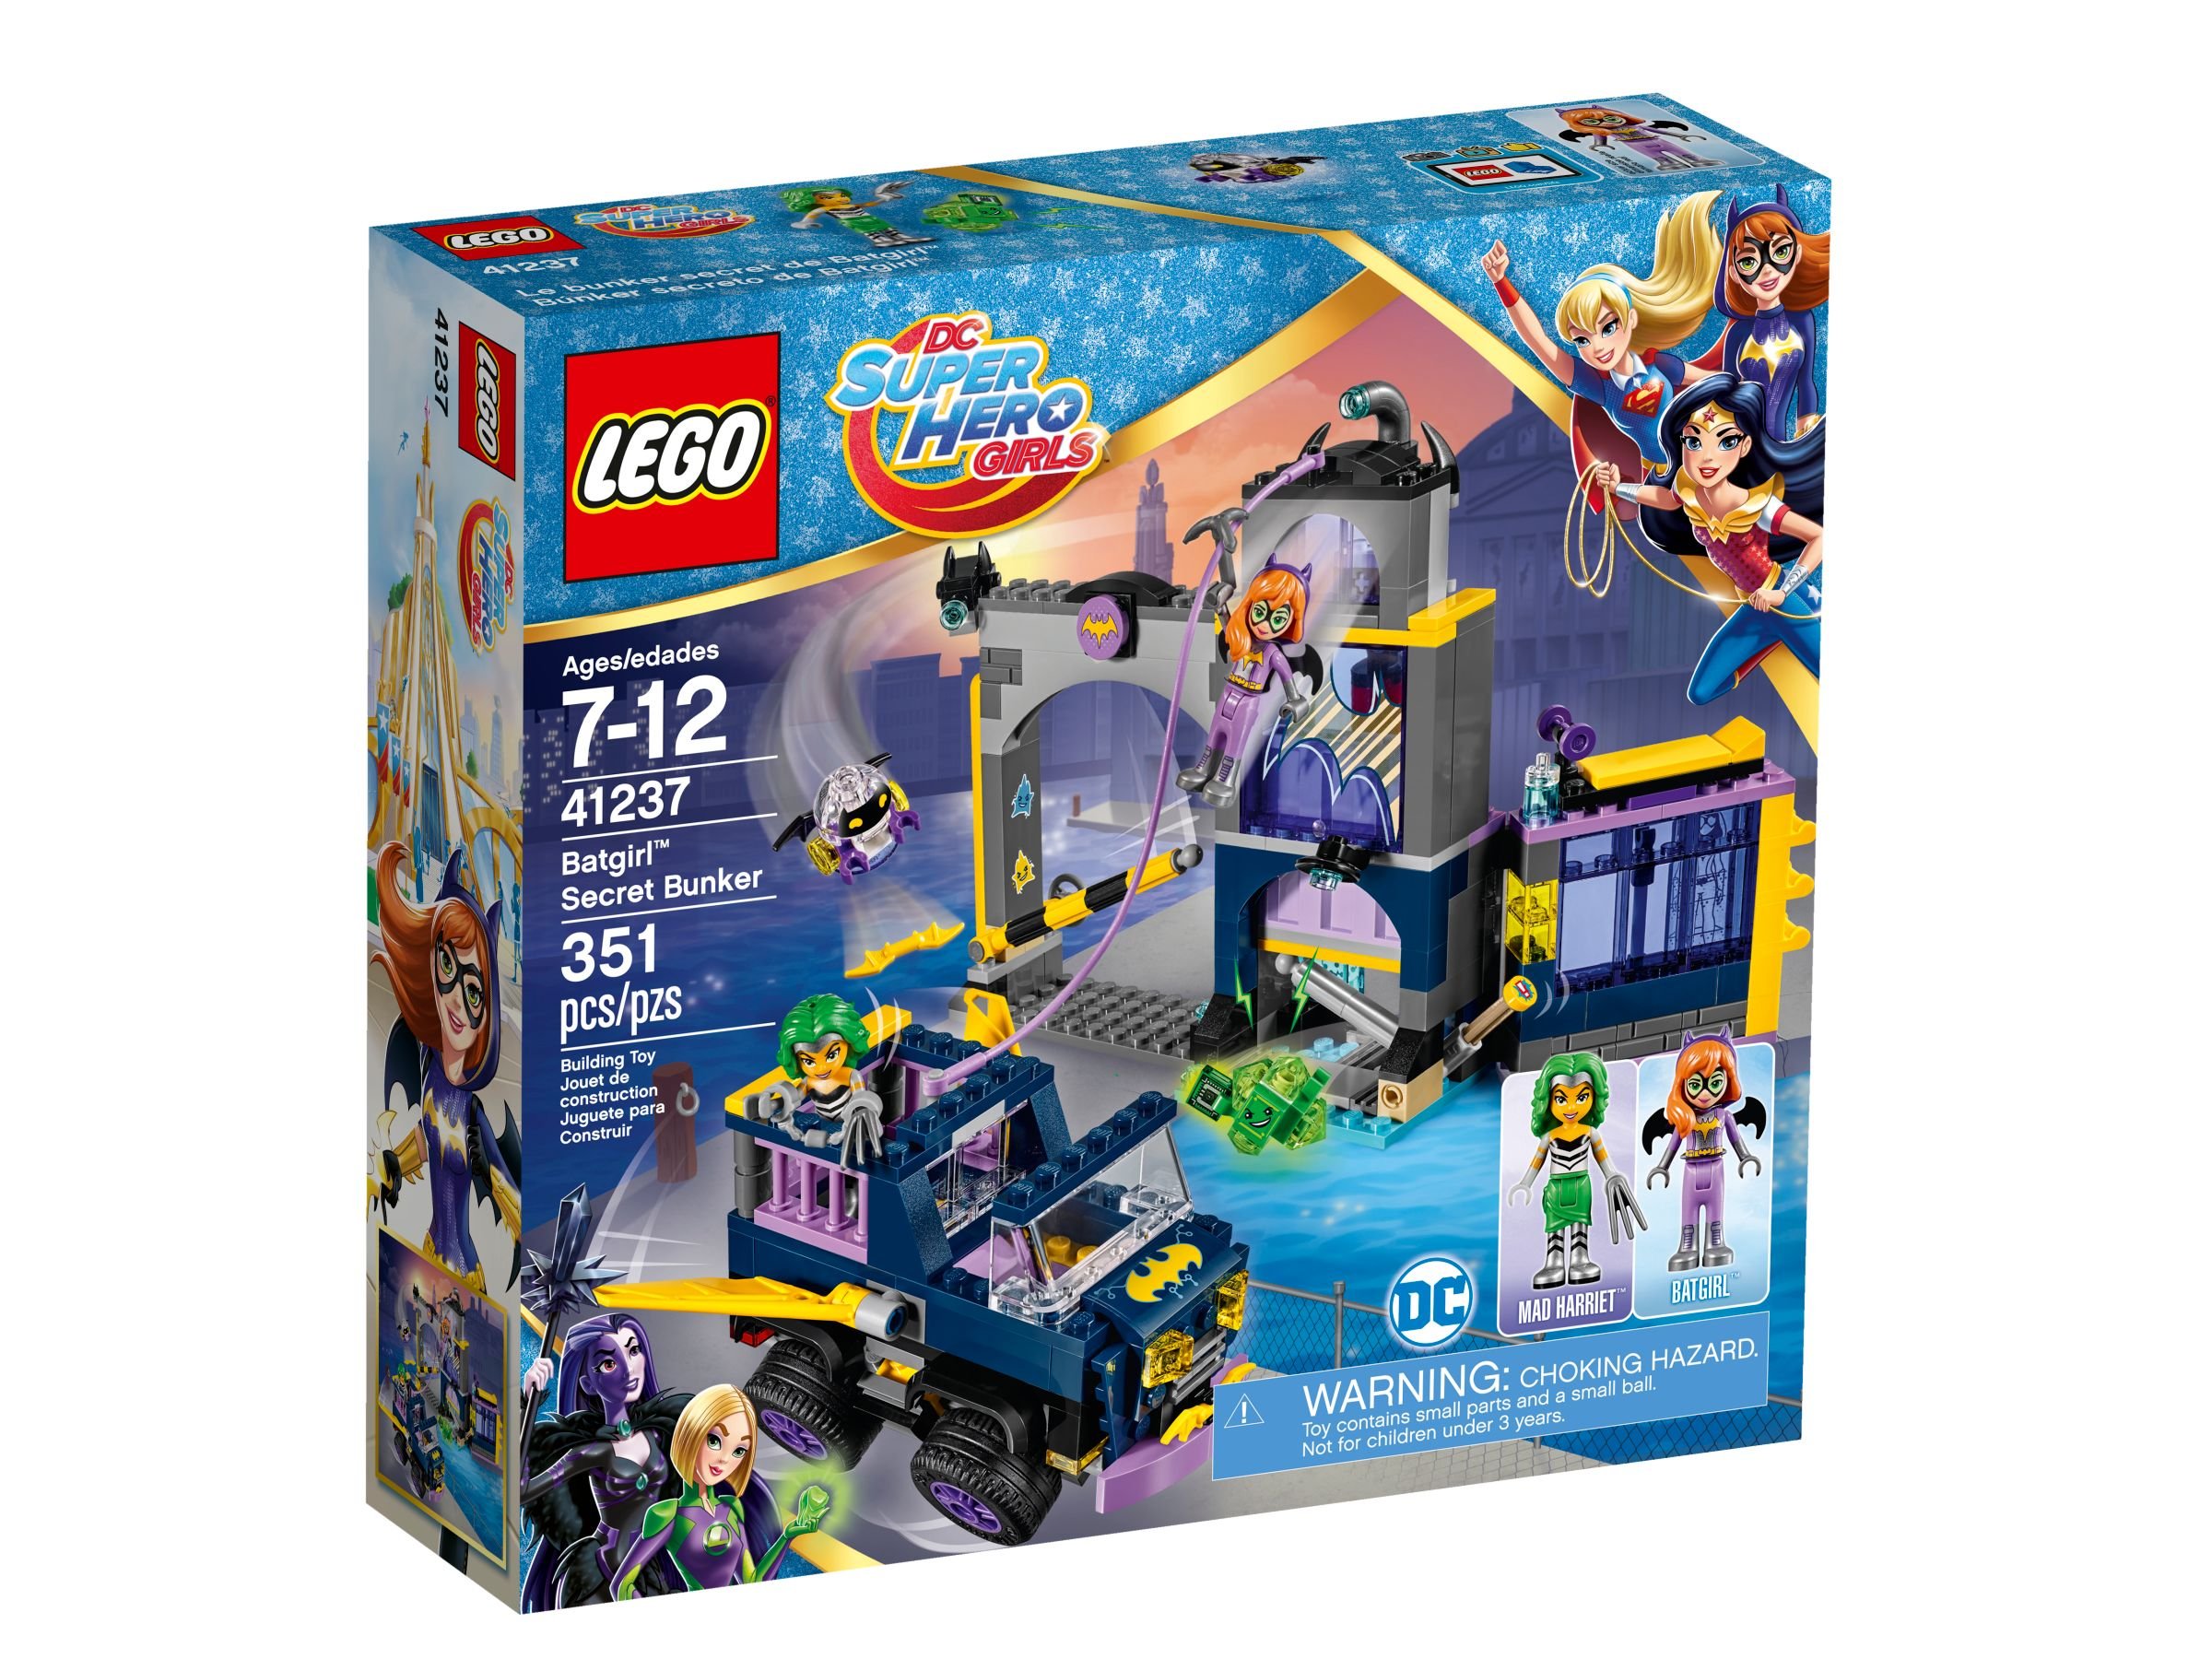 LEGO DC Super Hero Girls 41237 Das Geheimversteck von Batgirl™ LEGO_41237_alt1.jpg